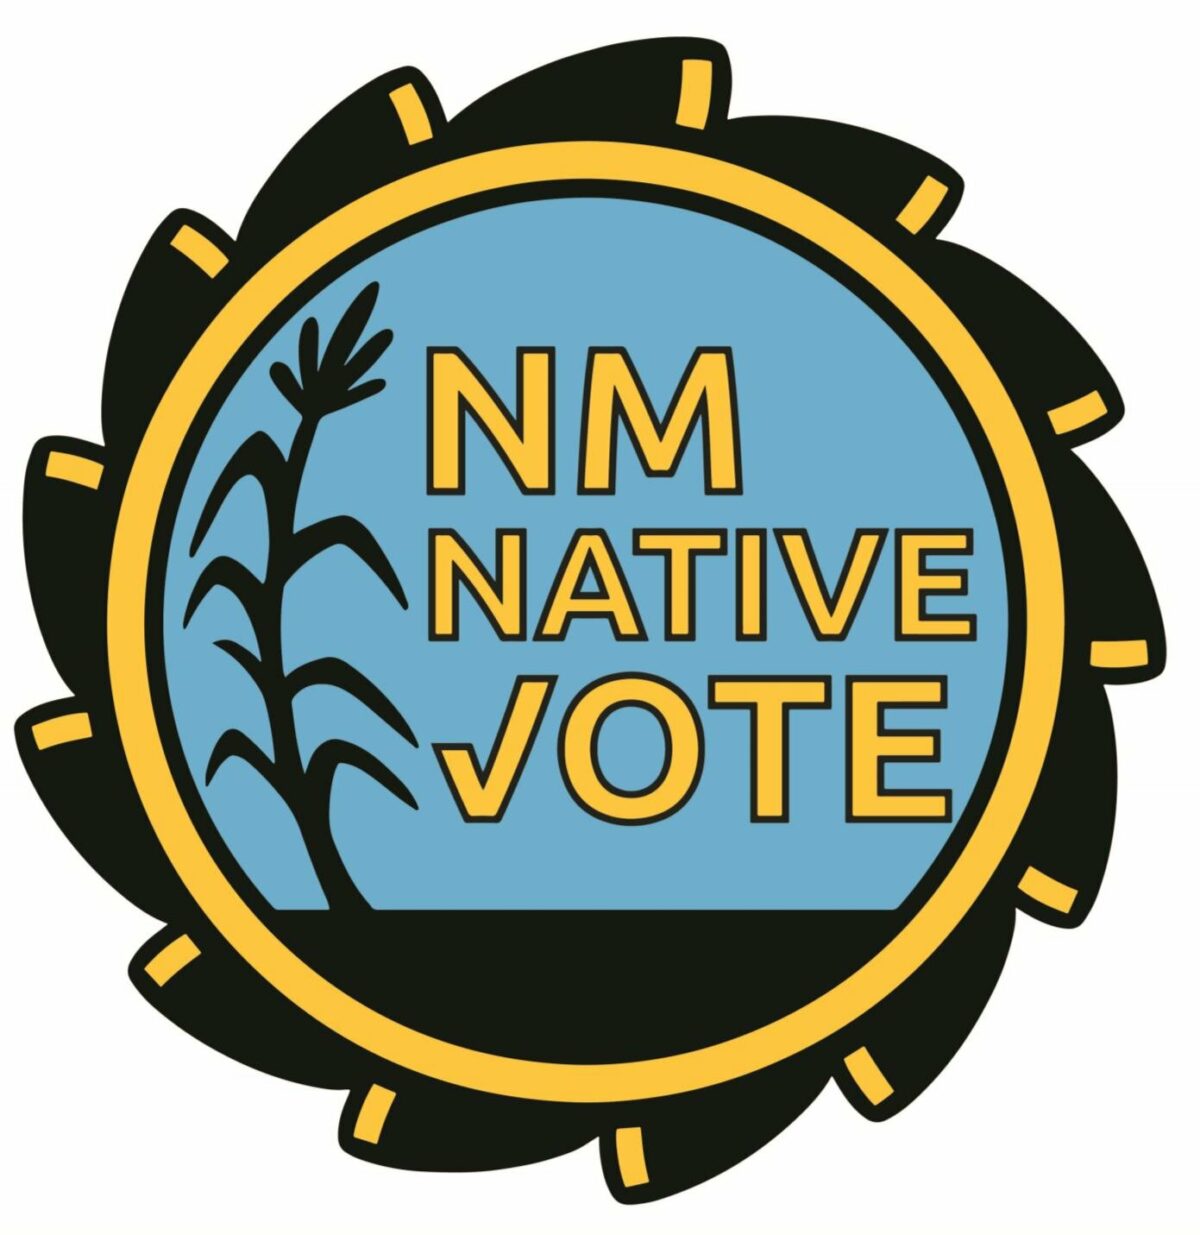 NM Native vote logo